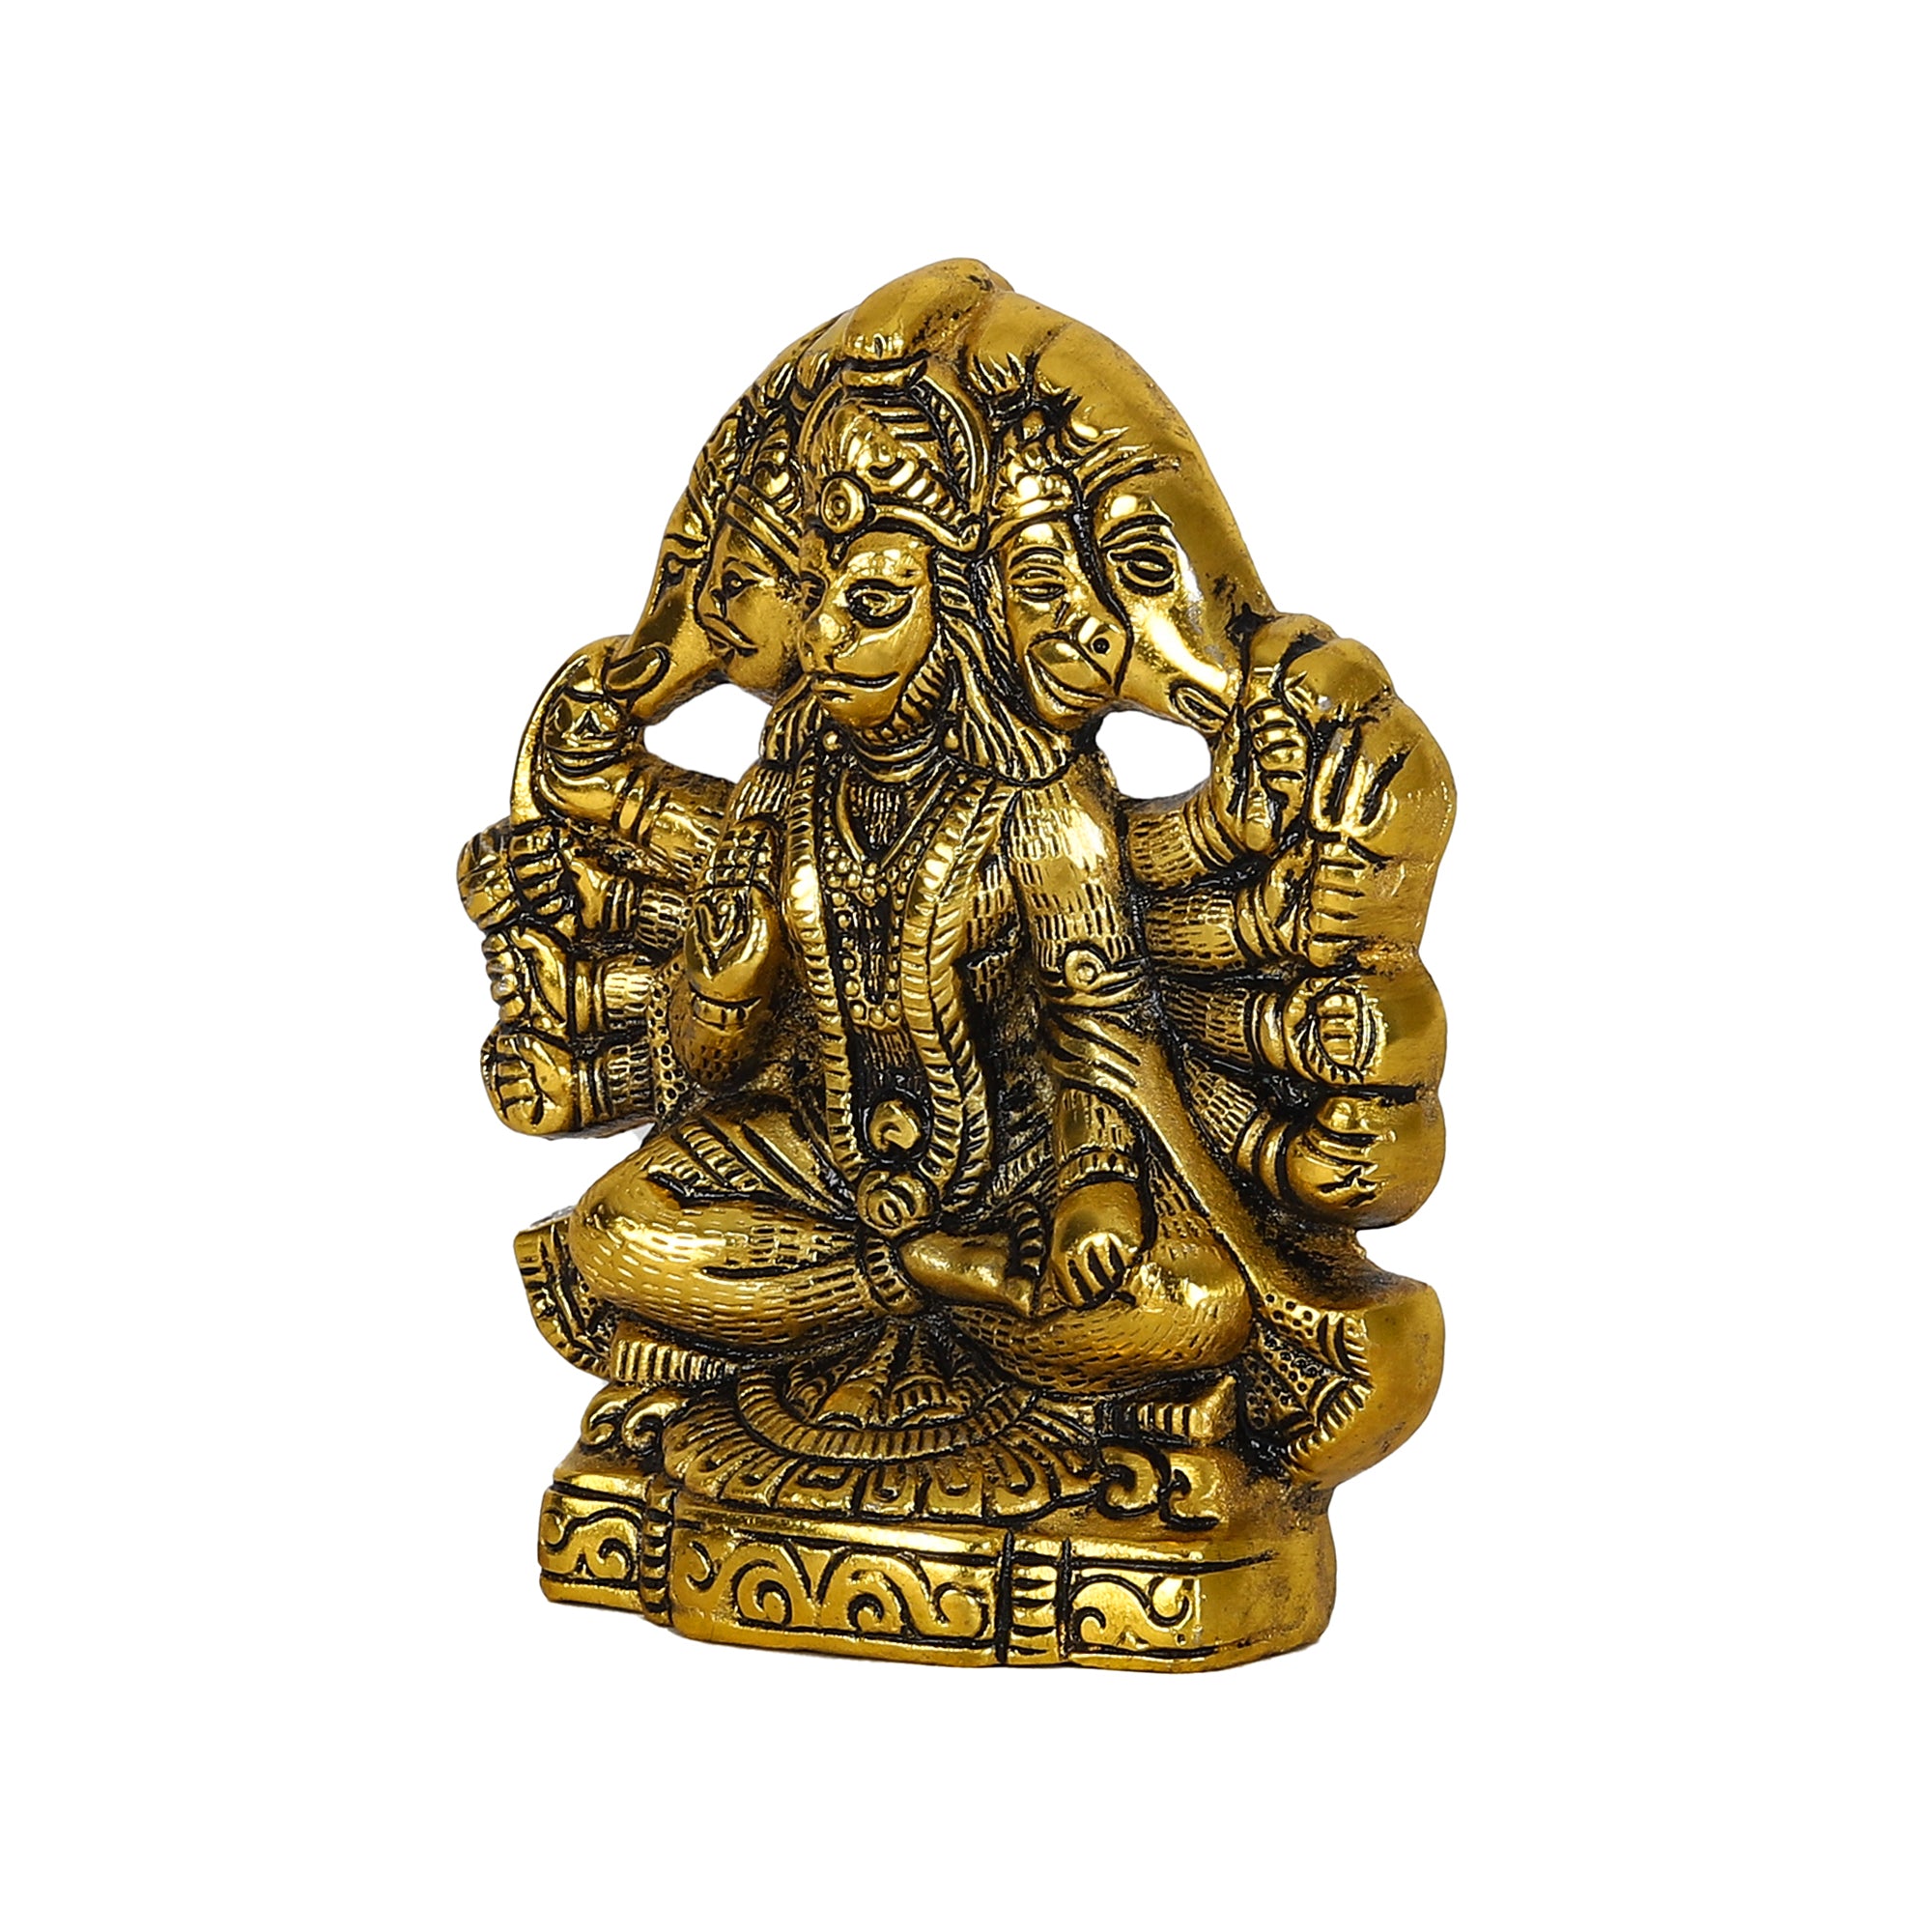 5 Faces Panchmukhi Hanuman Statue | Gillette Metal Home Decor